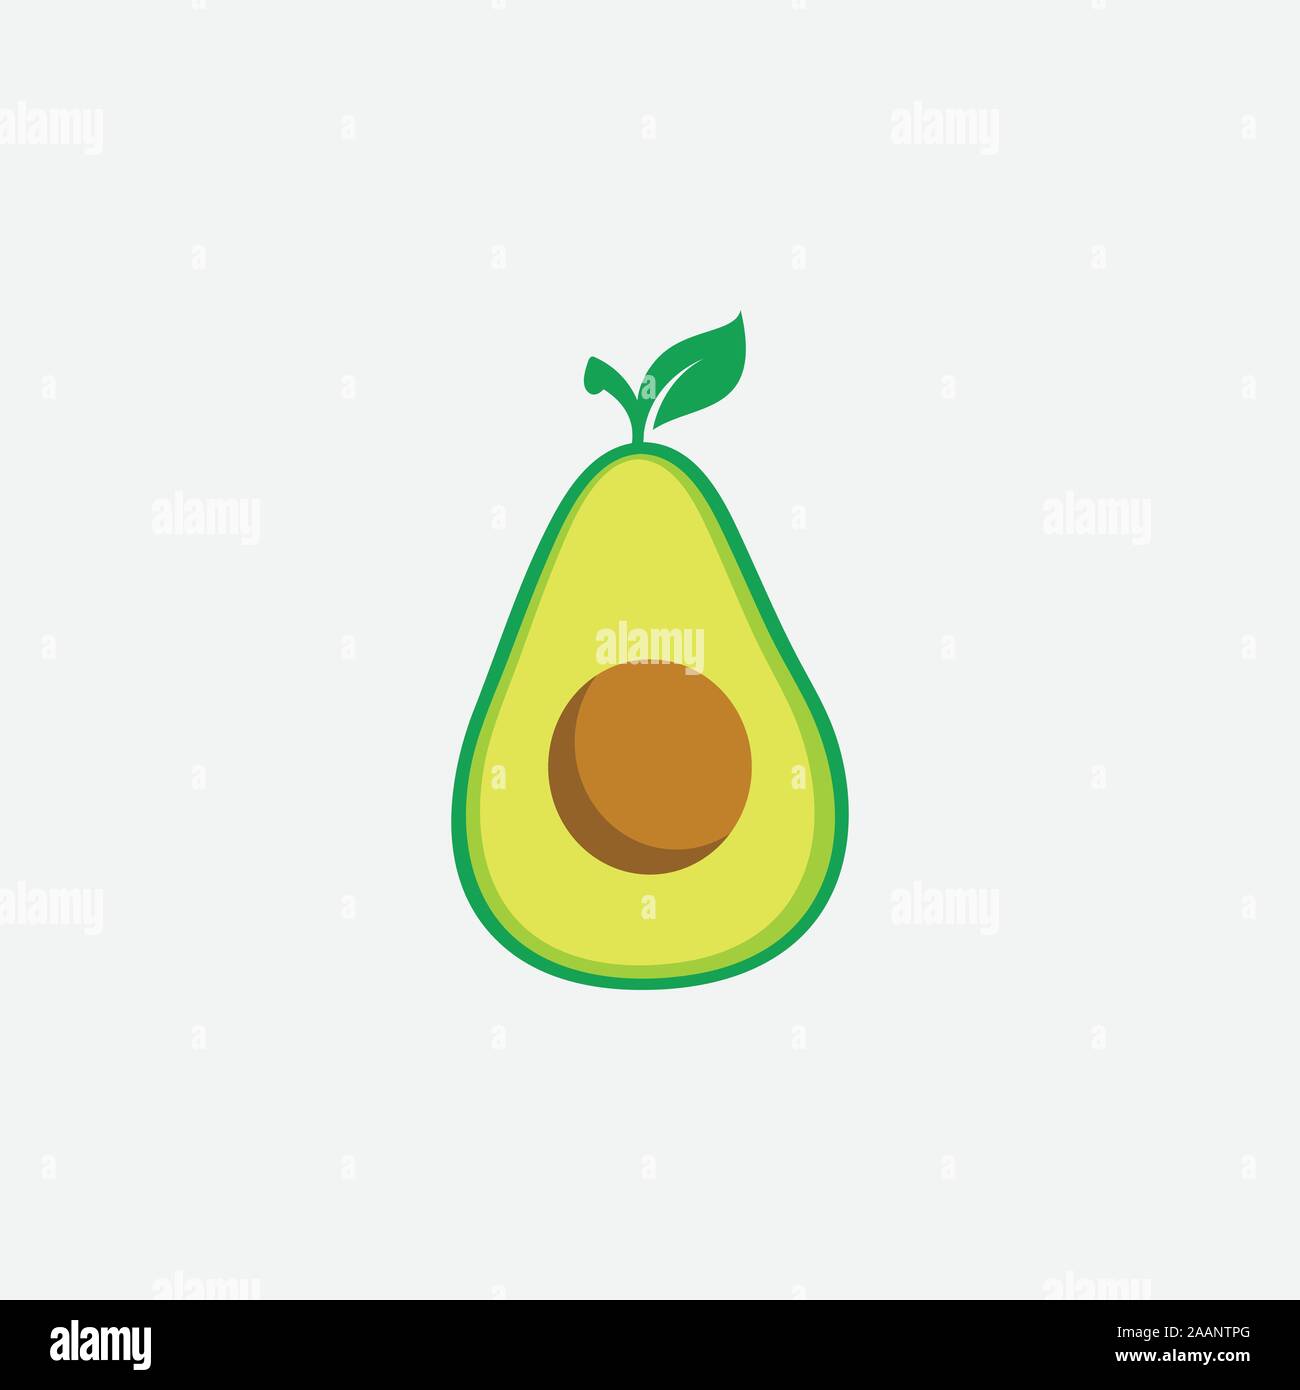 Frutto di Avocado logo design modello di Avocado con mezza foglia di disegno vettoriale, salute alimentare illustrazione di frutta Illustrazione Vettoriale